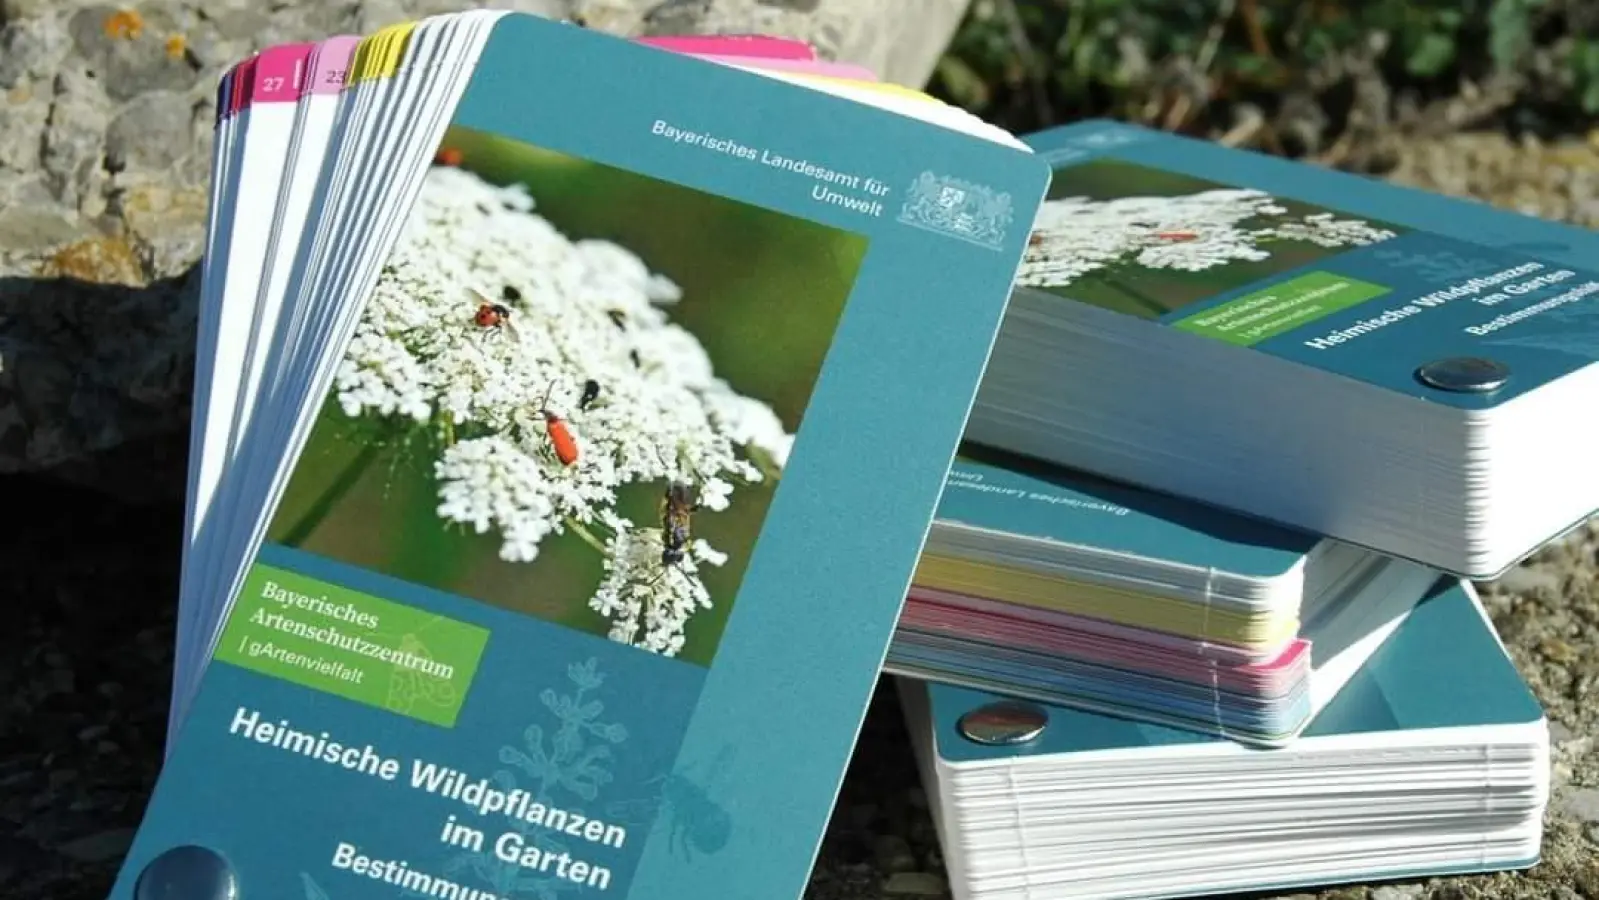 Mit dem Fächer lassen sich 50 Wildpflanzen und ihr Nutzen für die Insektenwelt bestimmen. (Foto: Bayerisches Landesamt für Umwelt)